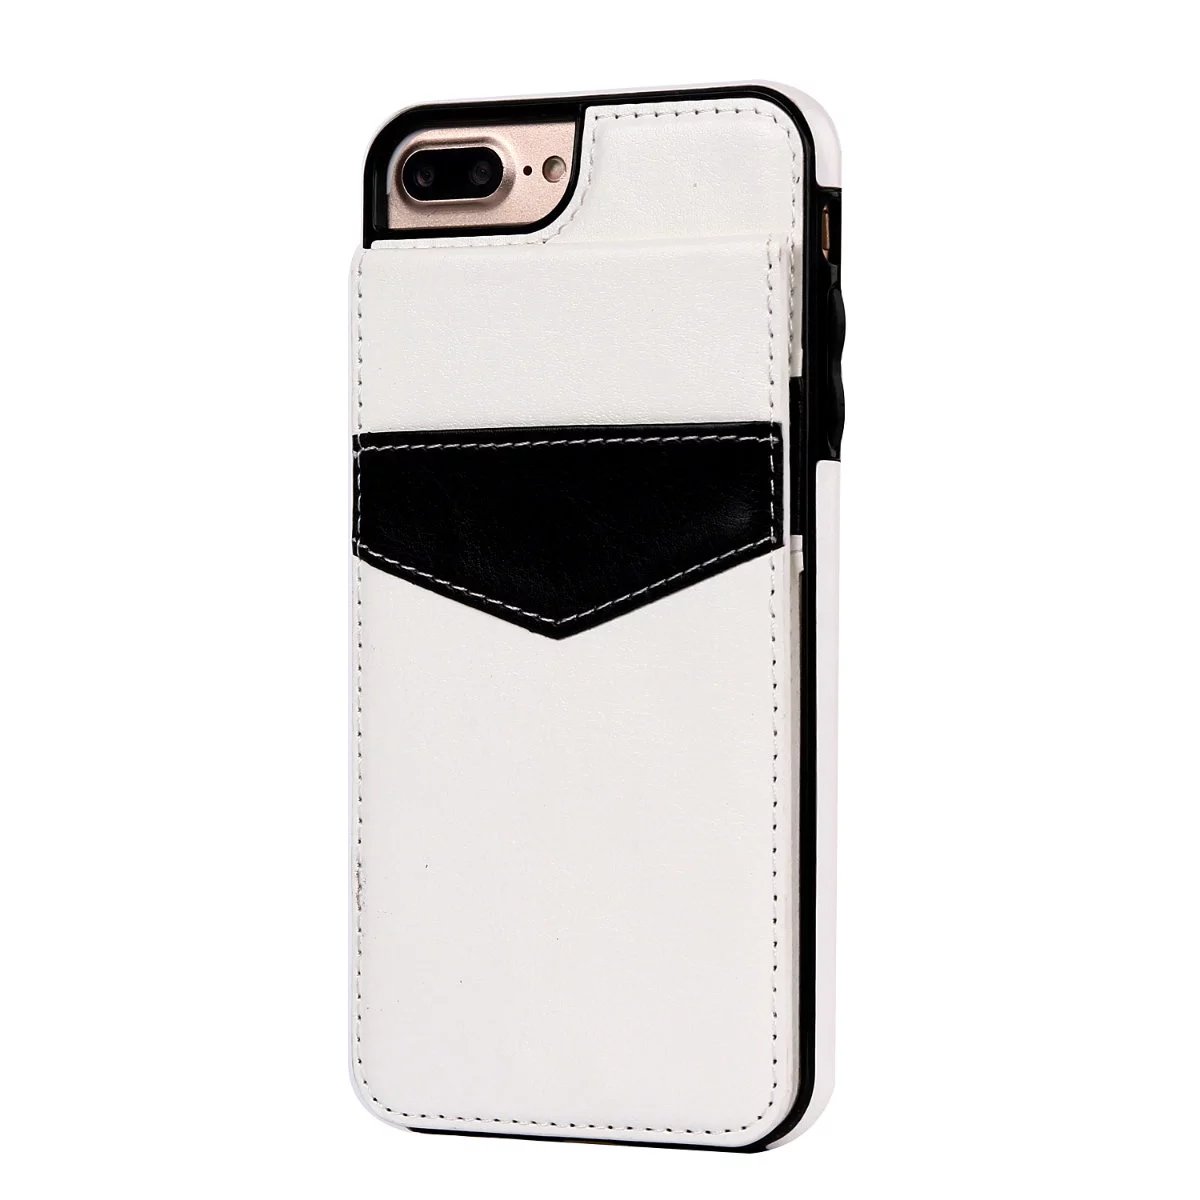 
アイフォン6splus カード入れiPhone7/7プラス耐衝撃革製携帯カバー彼氏父へのギフト
